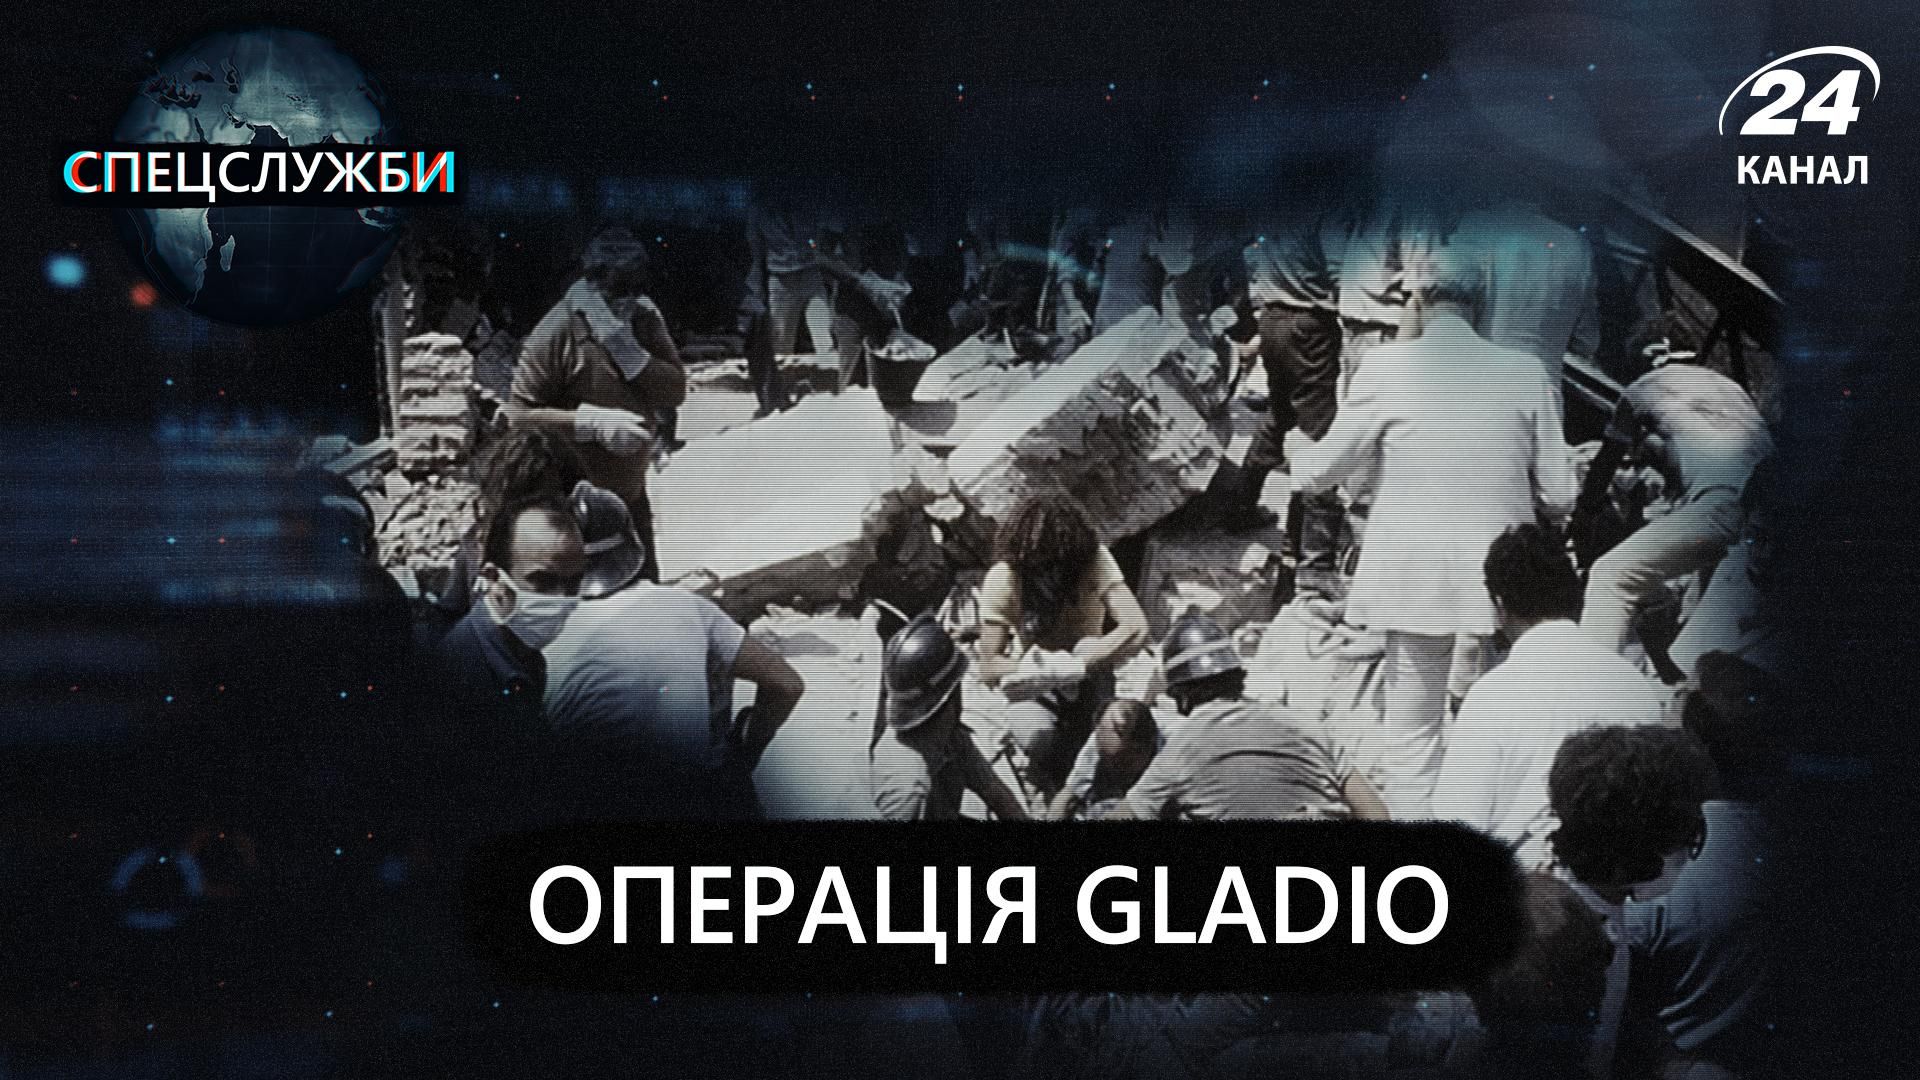 Операция Gladio: подпольные группы НАТО предотвращали вторжению